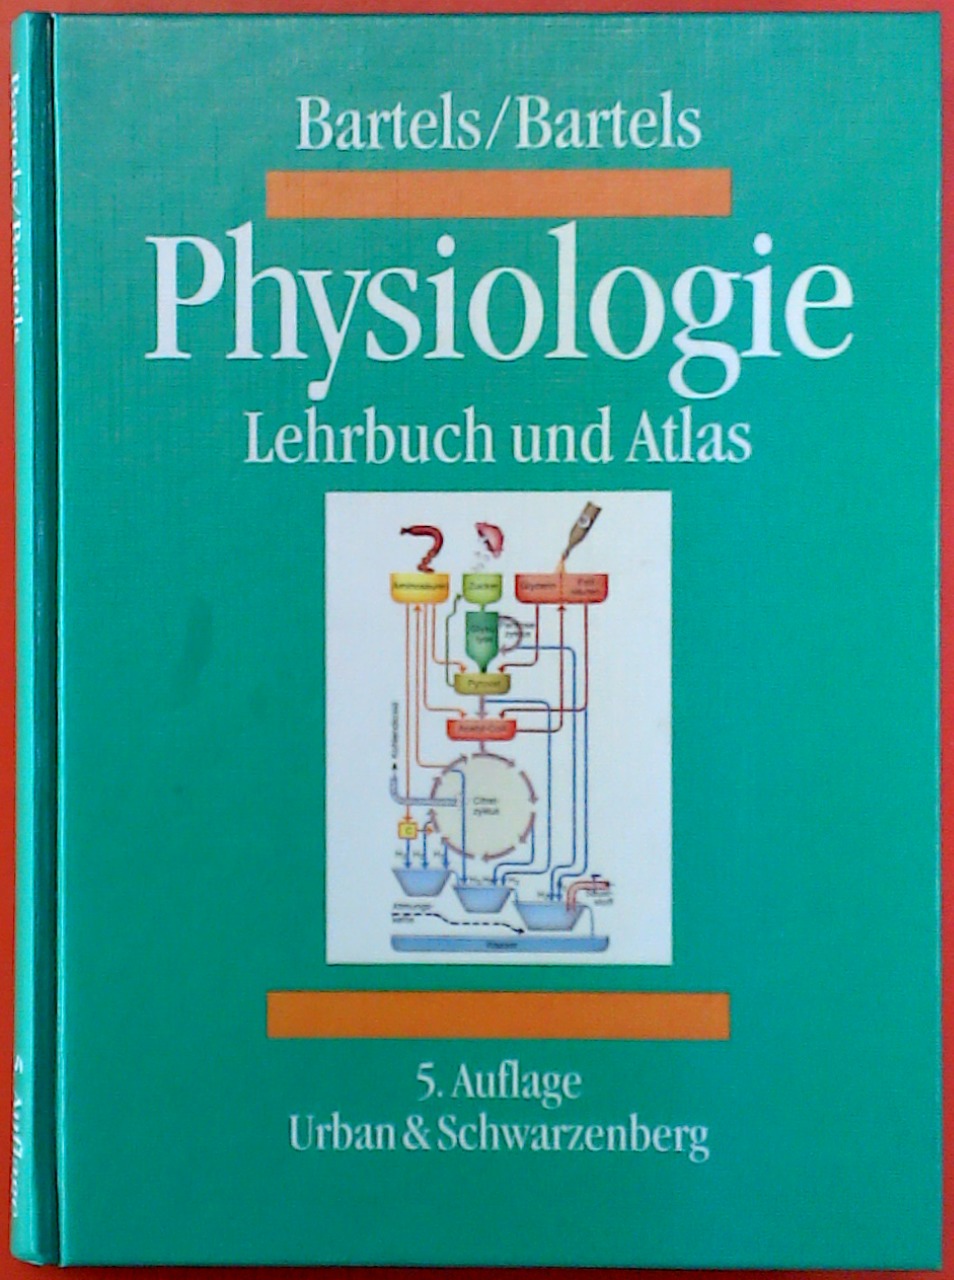 Physiologie - Lehrbuch und Atlas. 5. Auflage. - Heinz Bartels / Rut Bartels